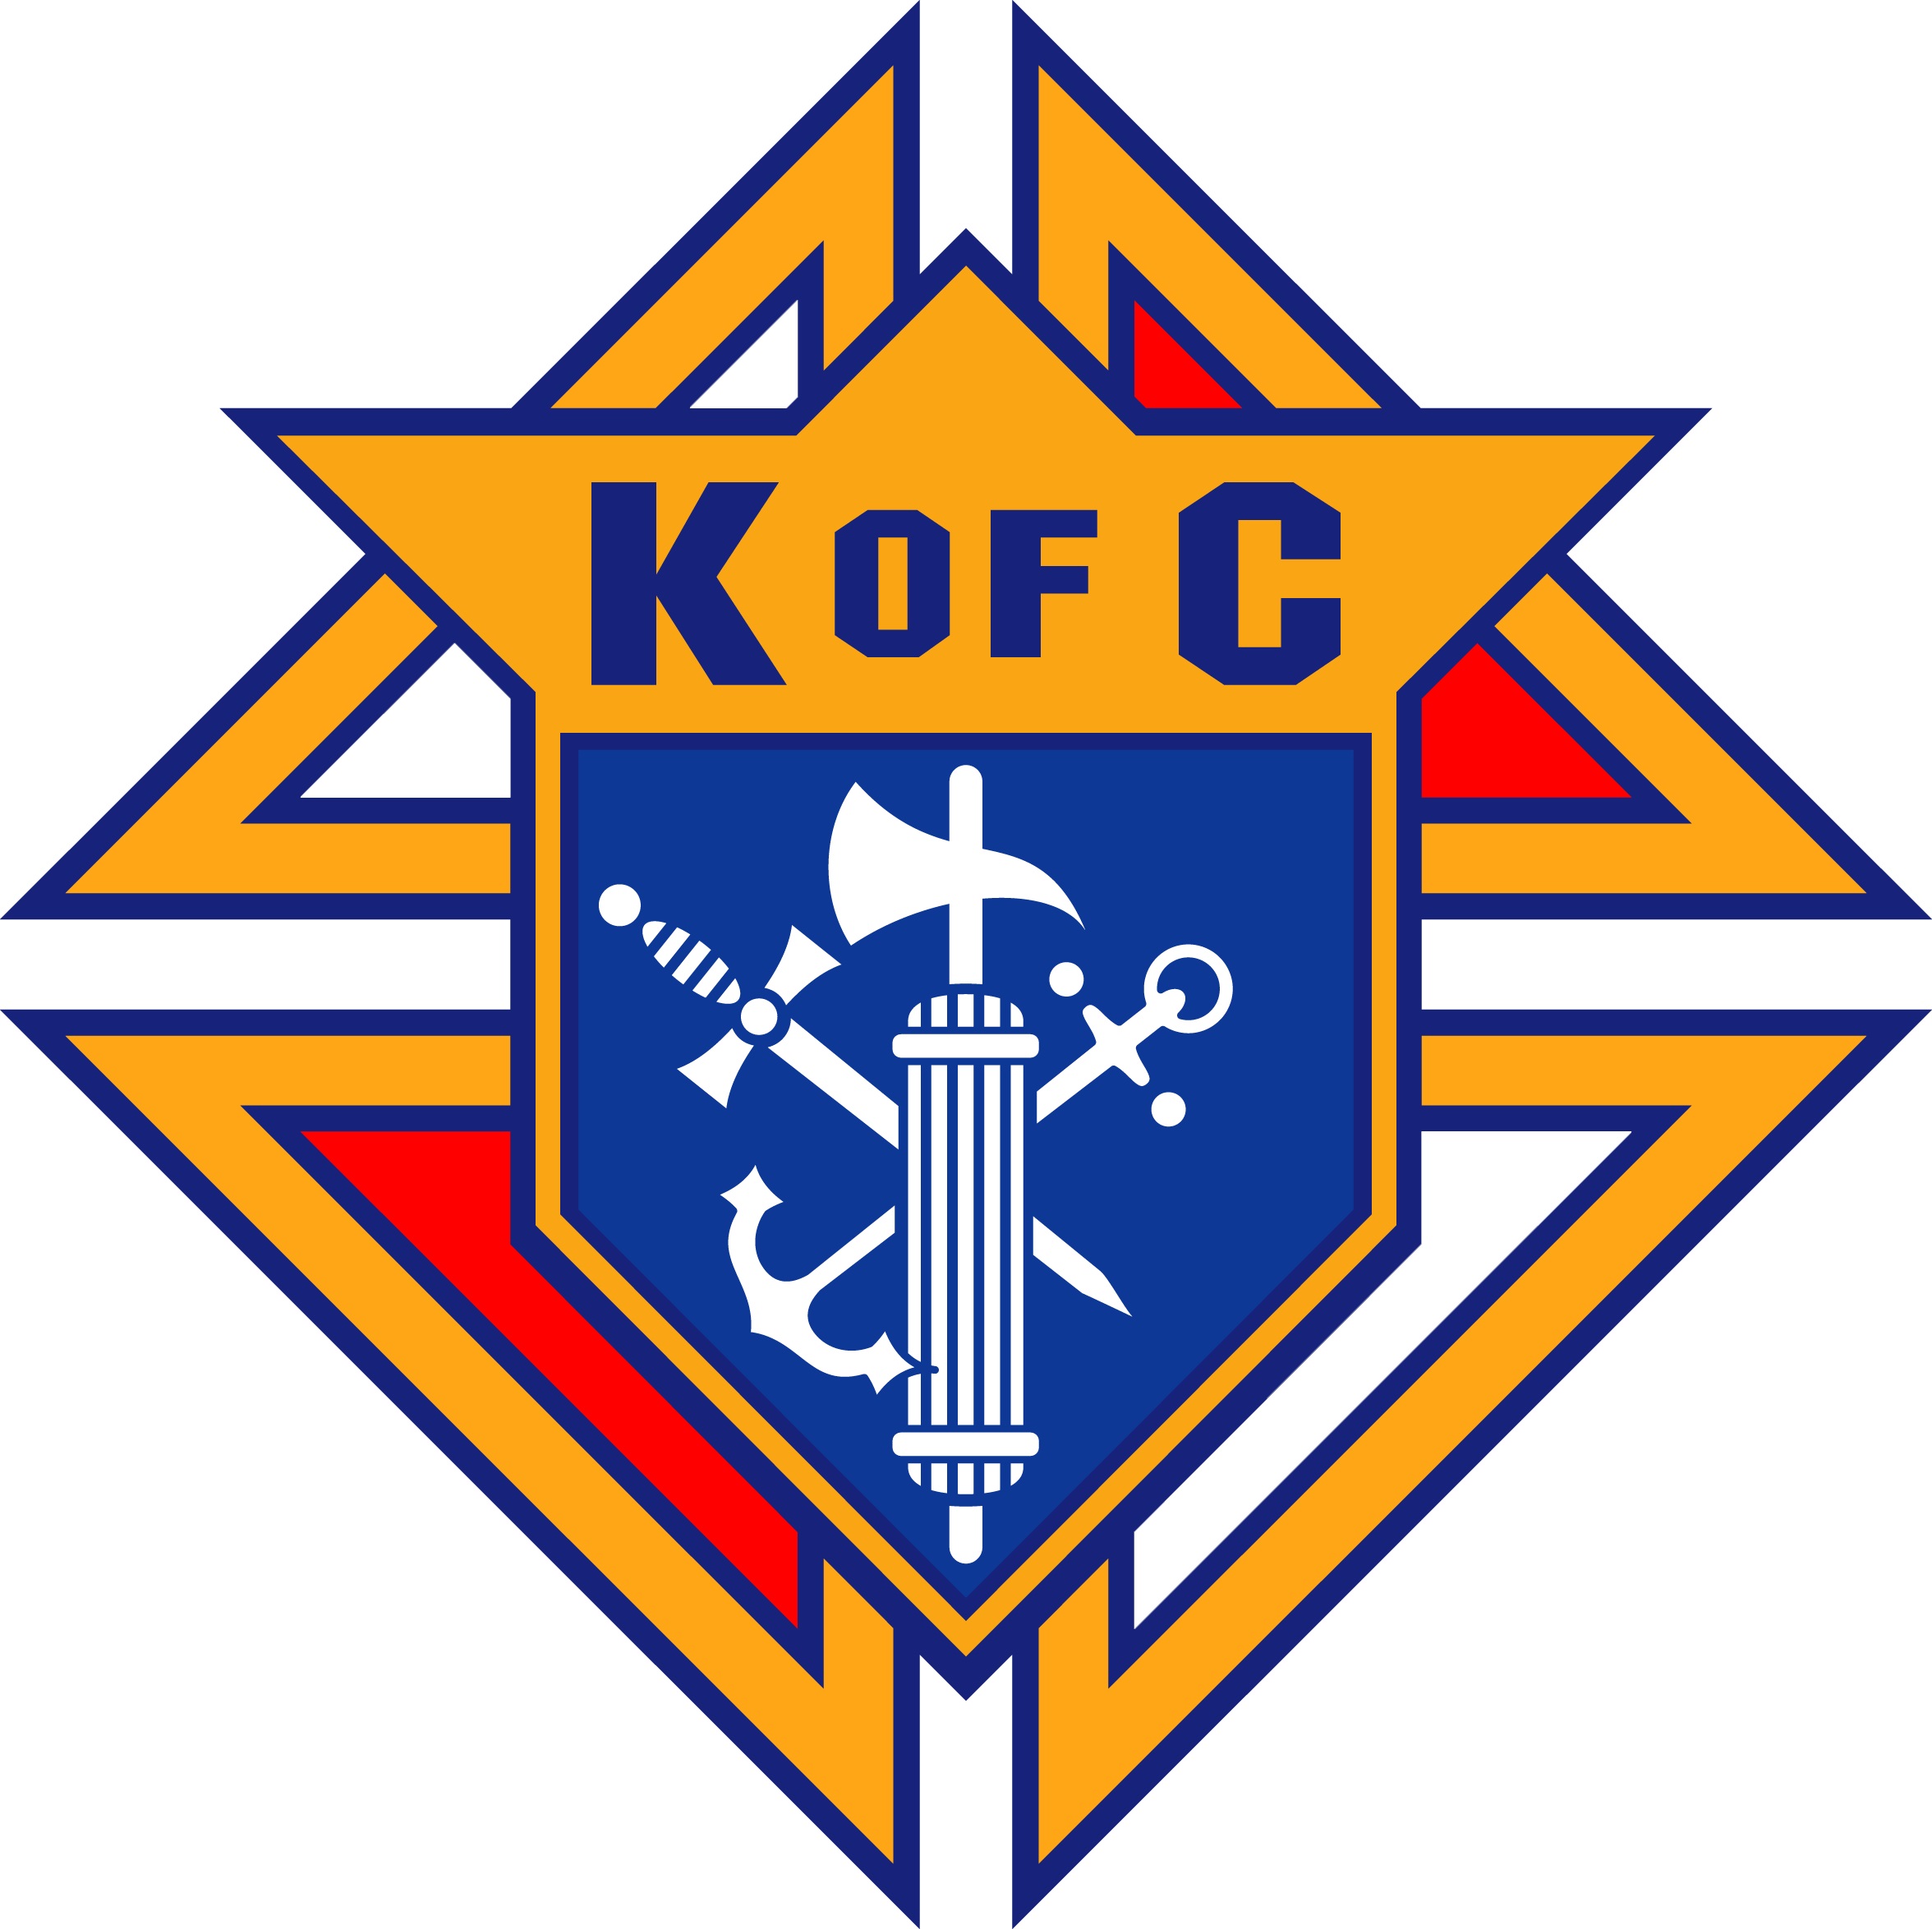 K of c Logos